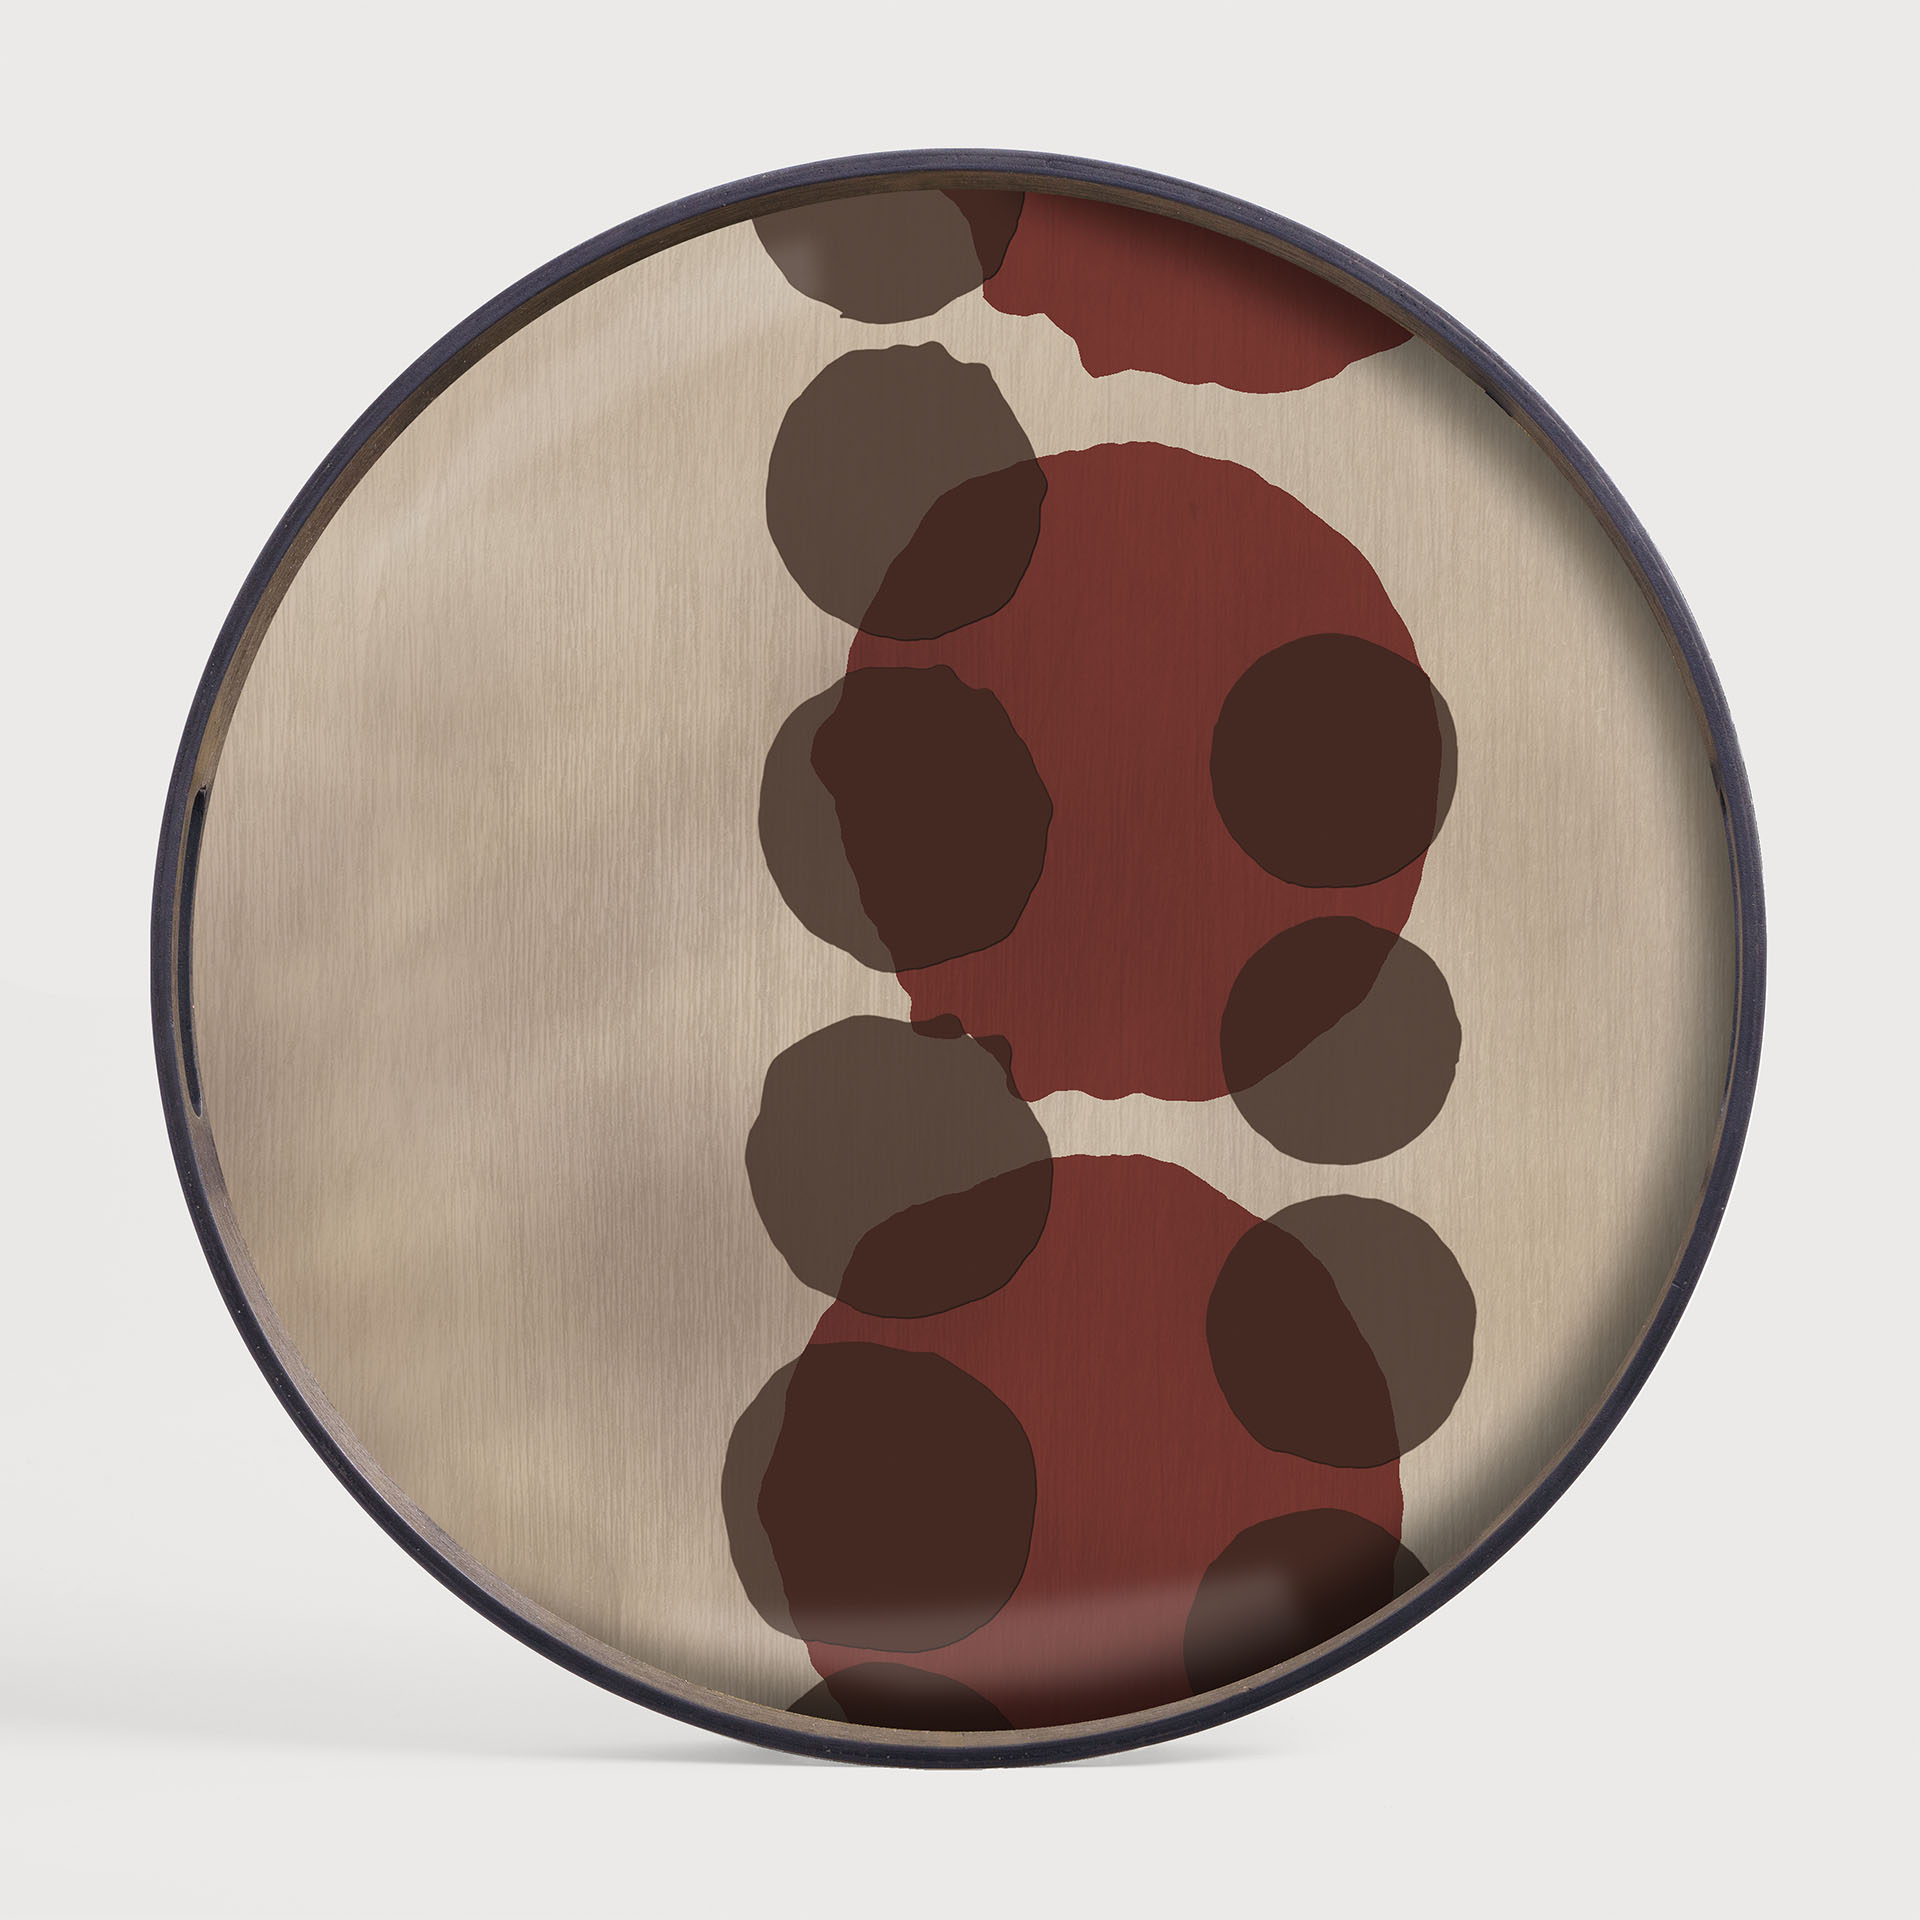 [20437*] Pinot Layered Dots glass tray